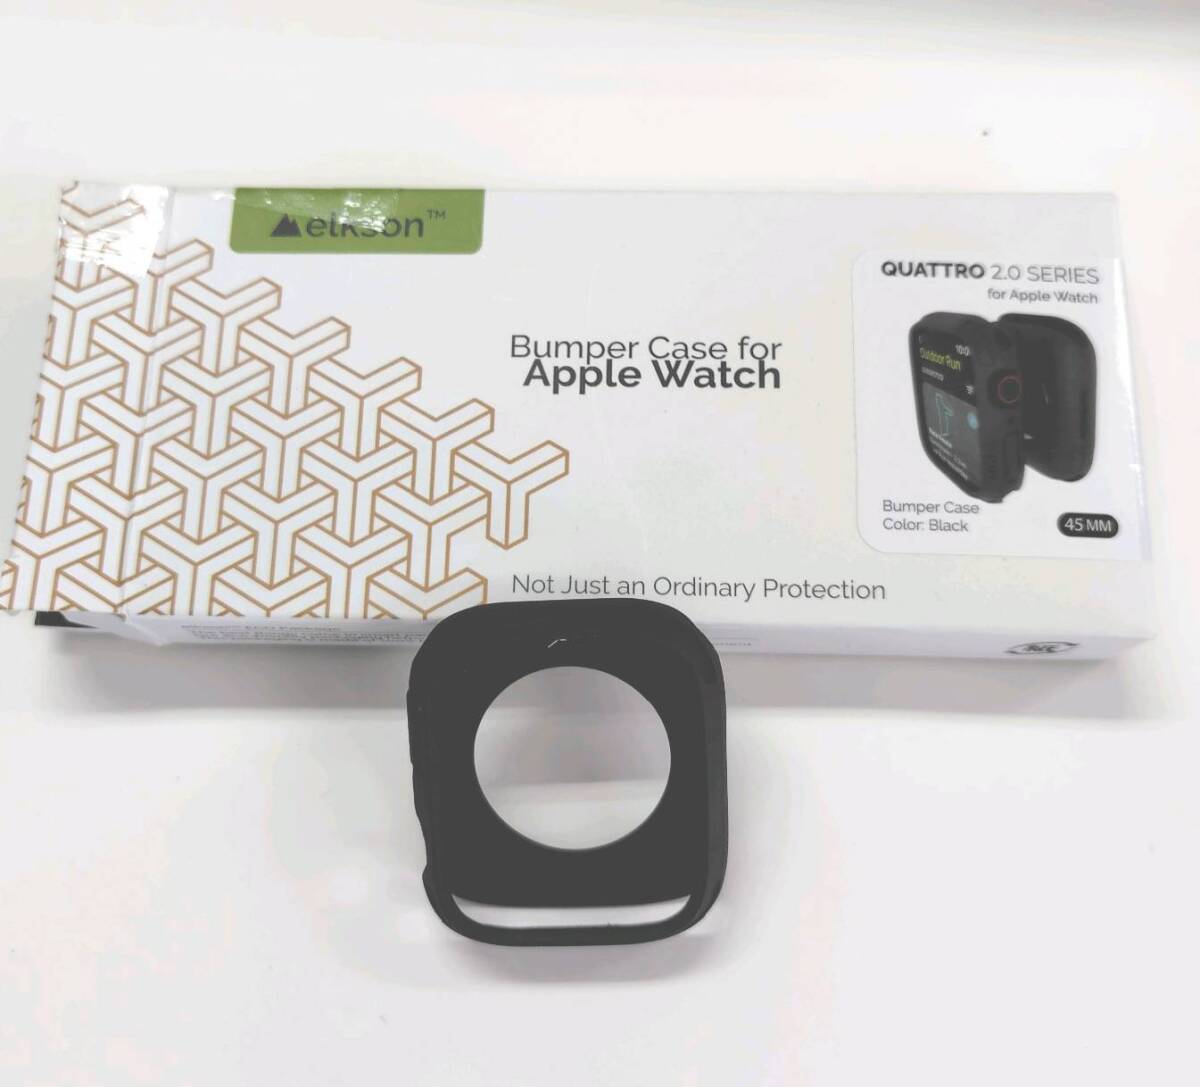 ★【在庫処分価格】elkson アップルウォッチ カバー Apple Watch 45mm 用 QUATTRO 2.0シリーズ ブラック☆C05-286a_画像1